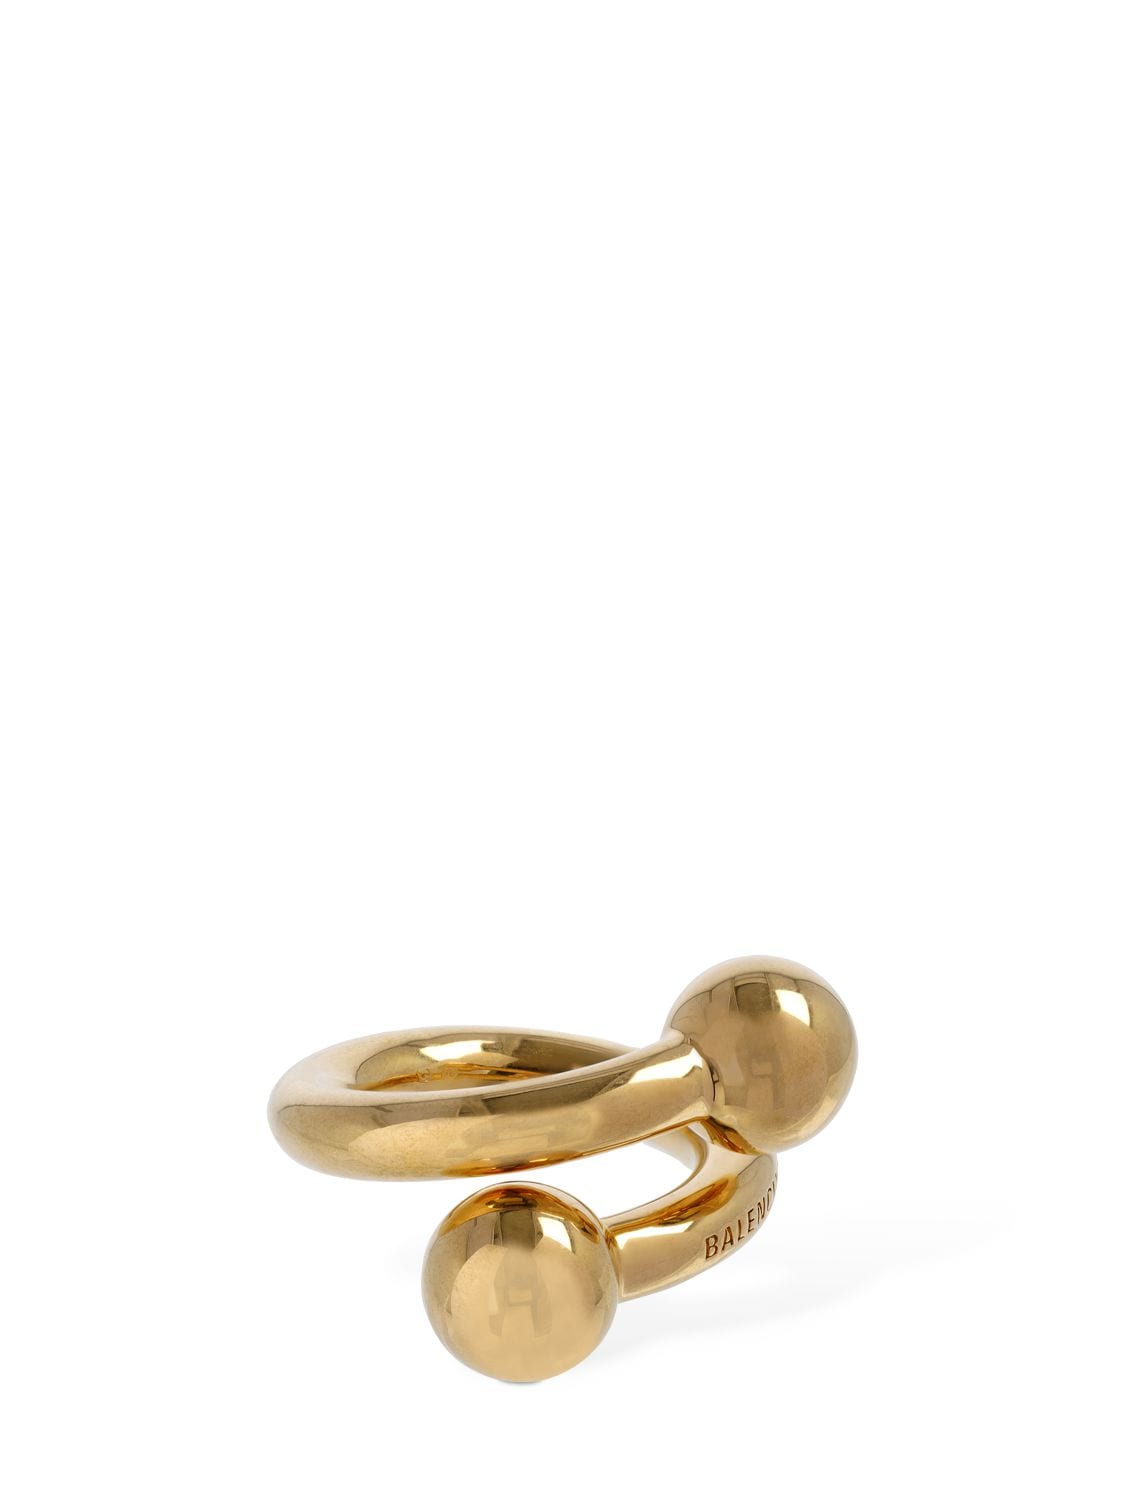 Balenciaga Skate Brass Ring In Gold